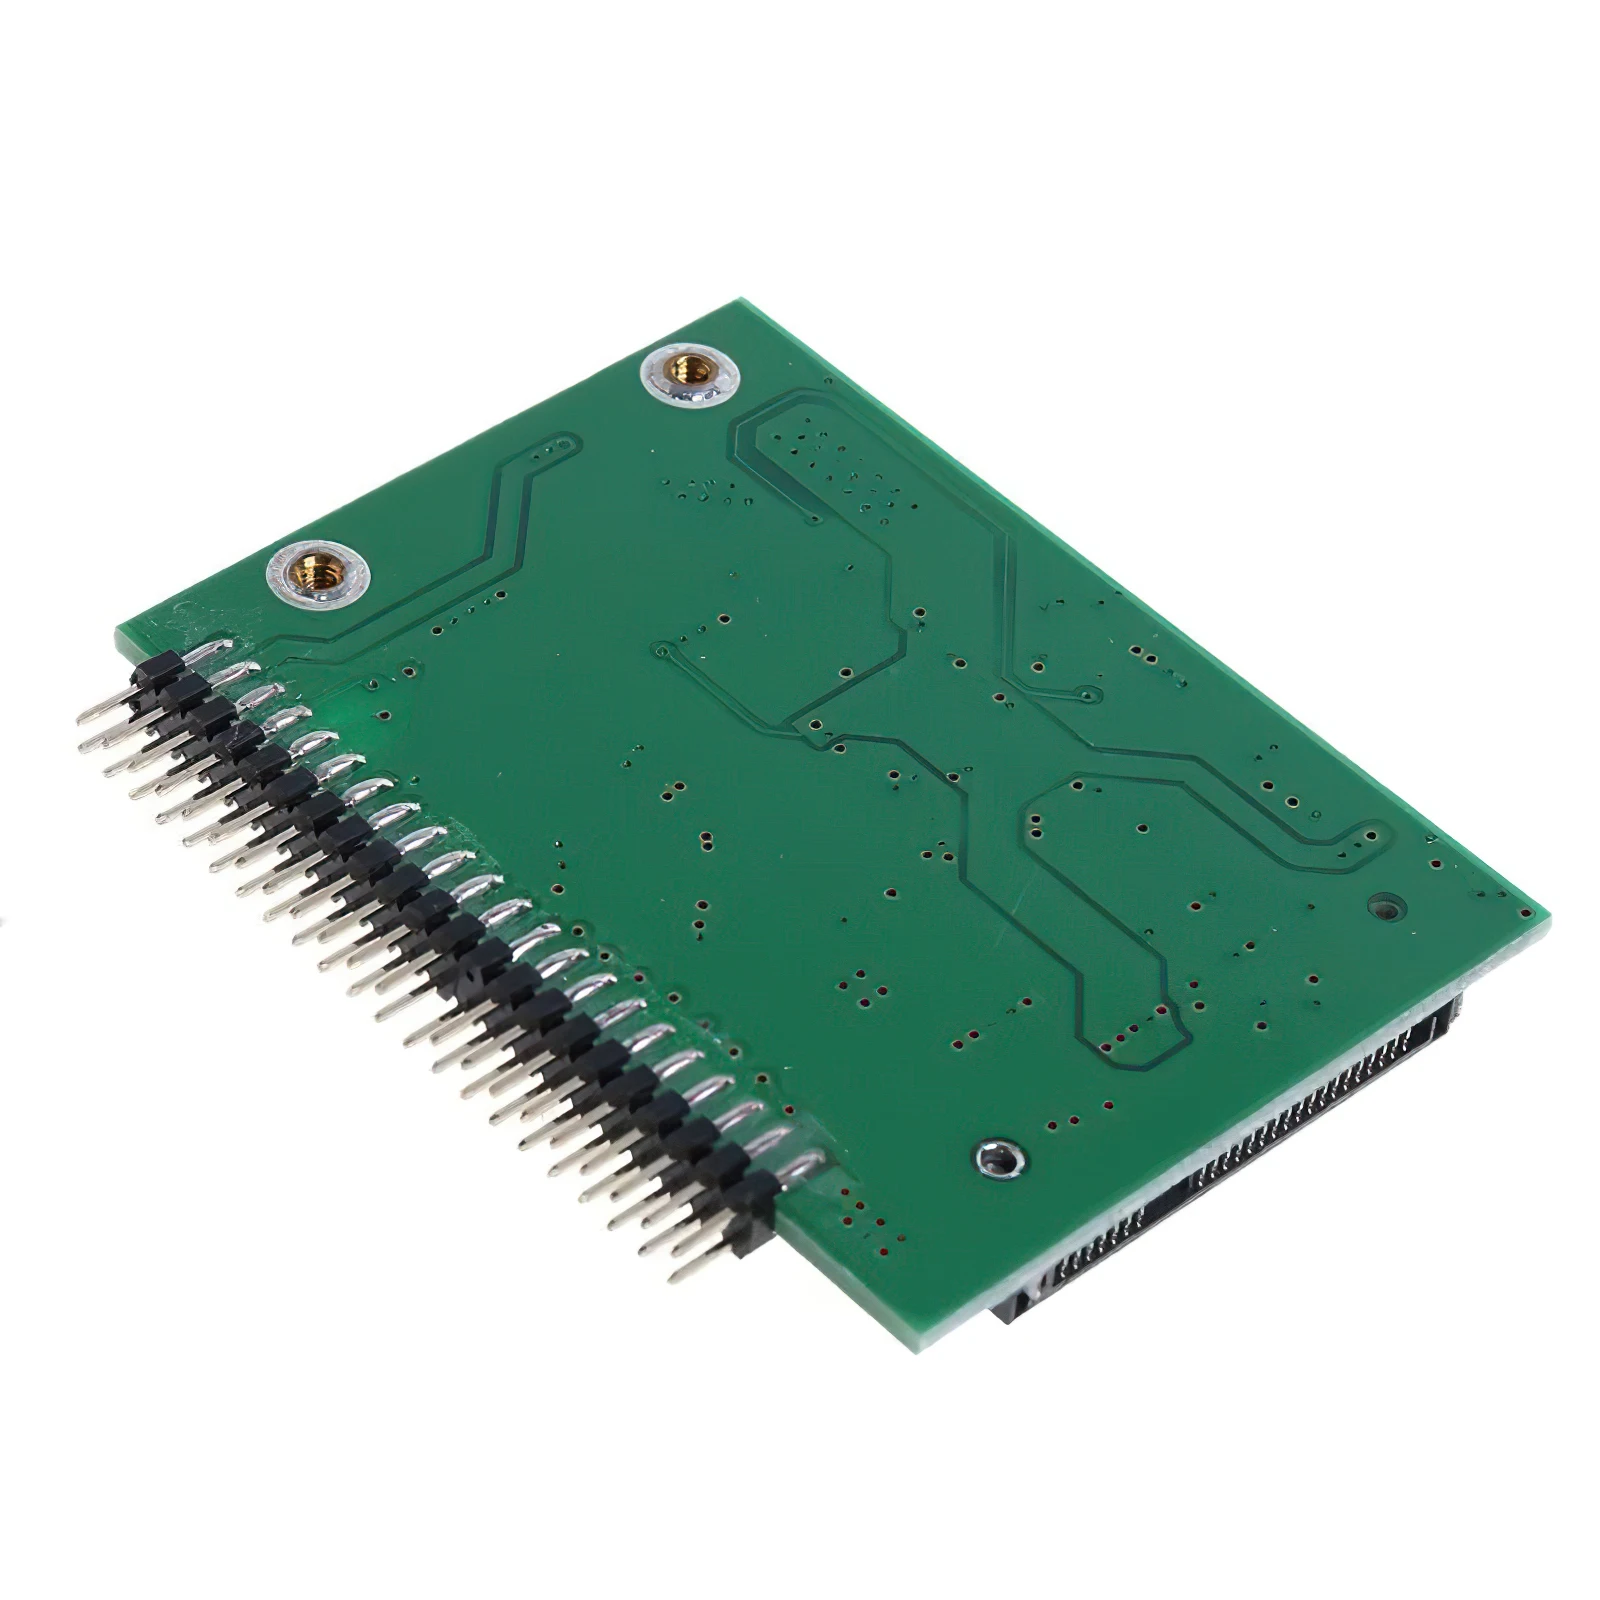 MSATA 미니 PCI-E SATA SSD 솔리드 스테이트 드라이브 5V1.8/2.5inch IDE44pin 남성 네트워크 어댑터 노트북 휴대용 퍼스널 컴퓨터 카드